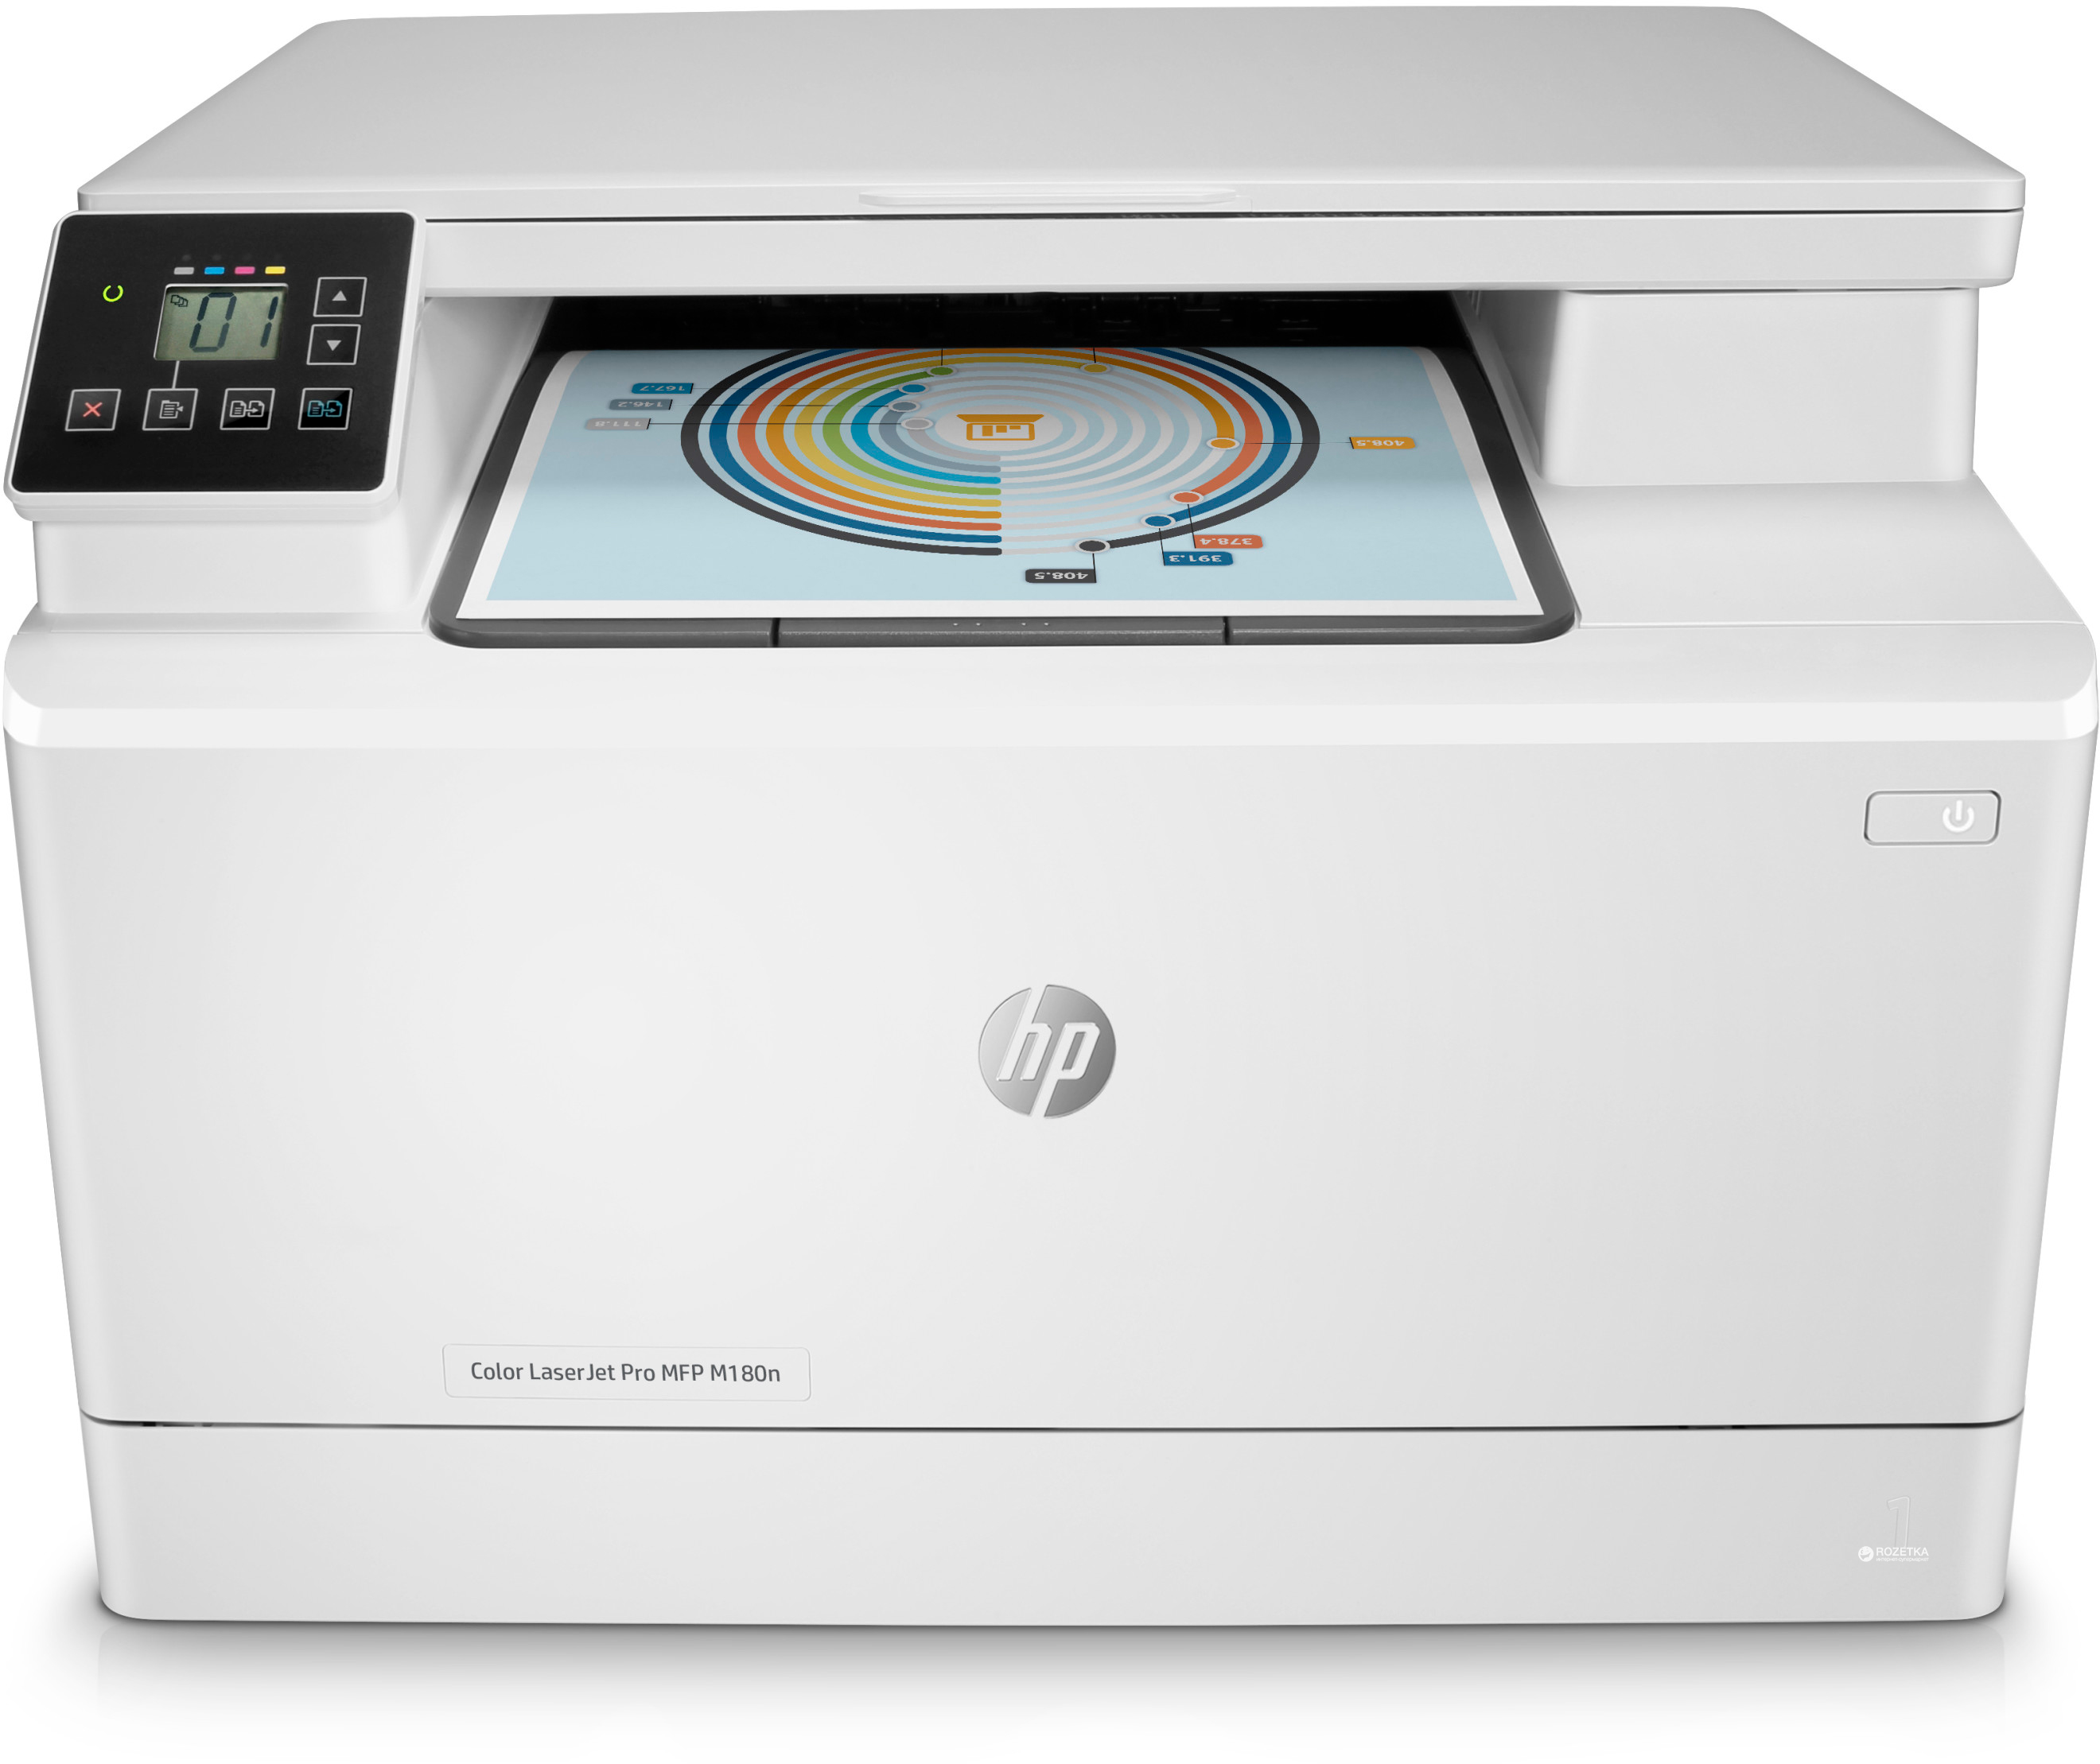 купить МФУ HP Color LaserJet Pro MFP M180n Printer (A4) в Алматы